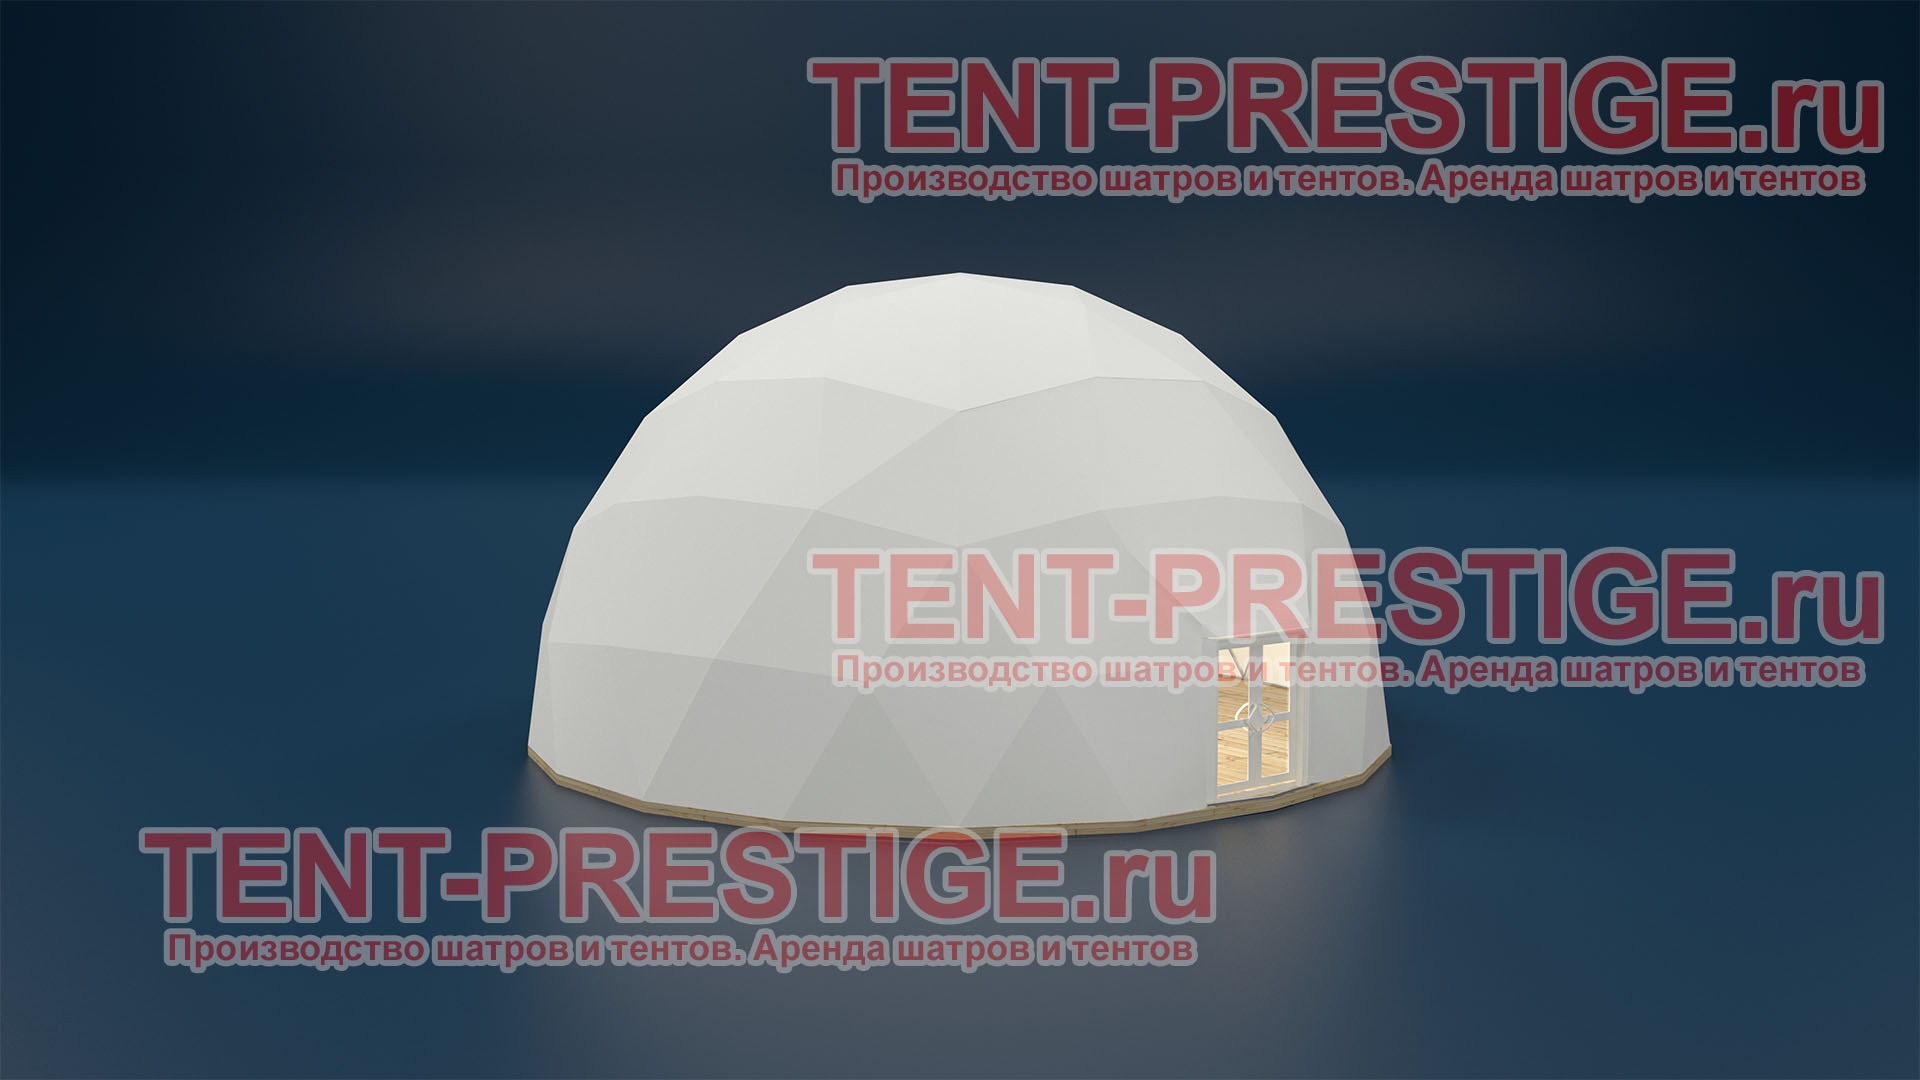 В аренду - Сферический шатер (Сфера) 14м белый 